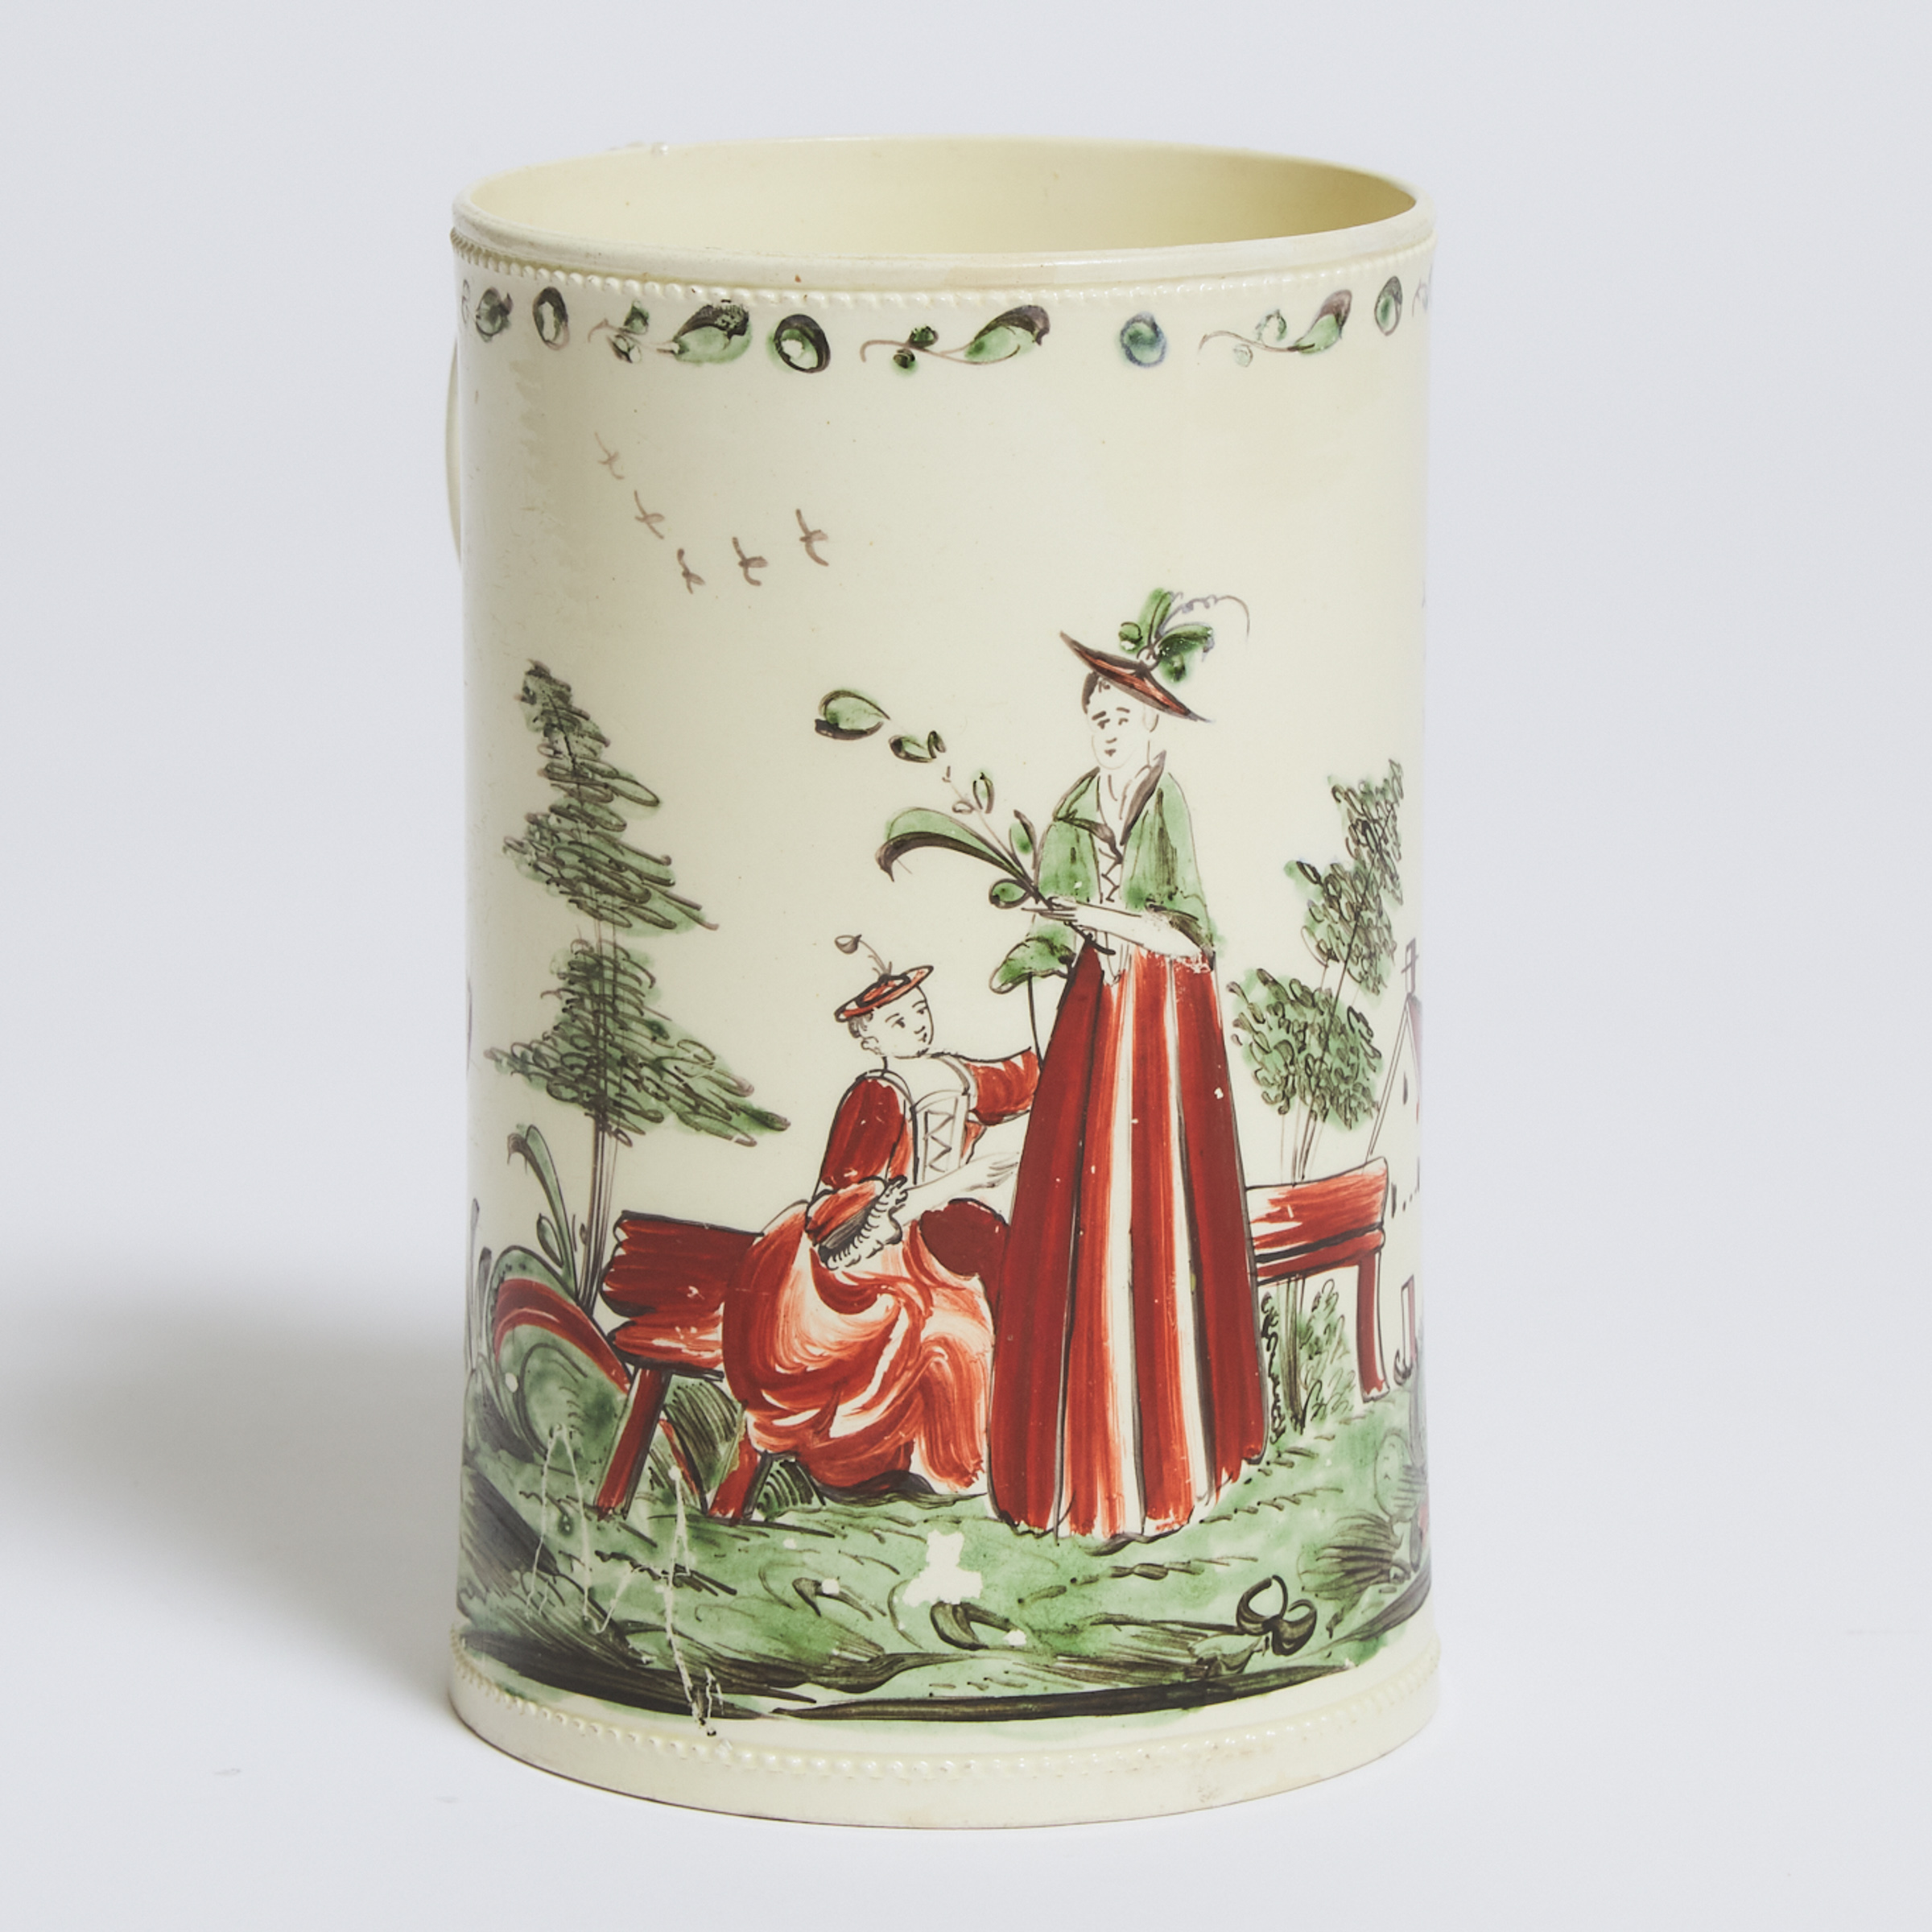 English Creamware Large Mug, probably Leeds, c.1775 